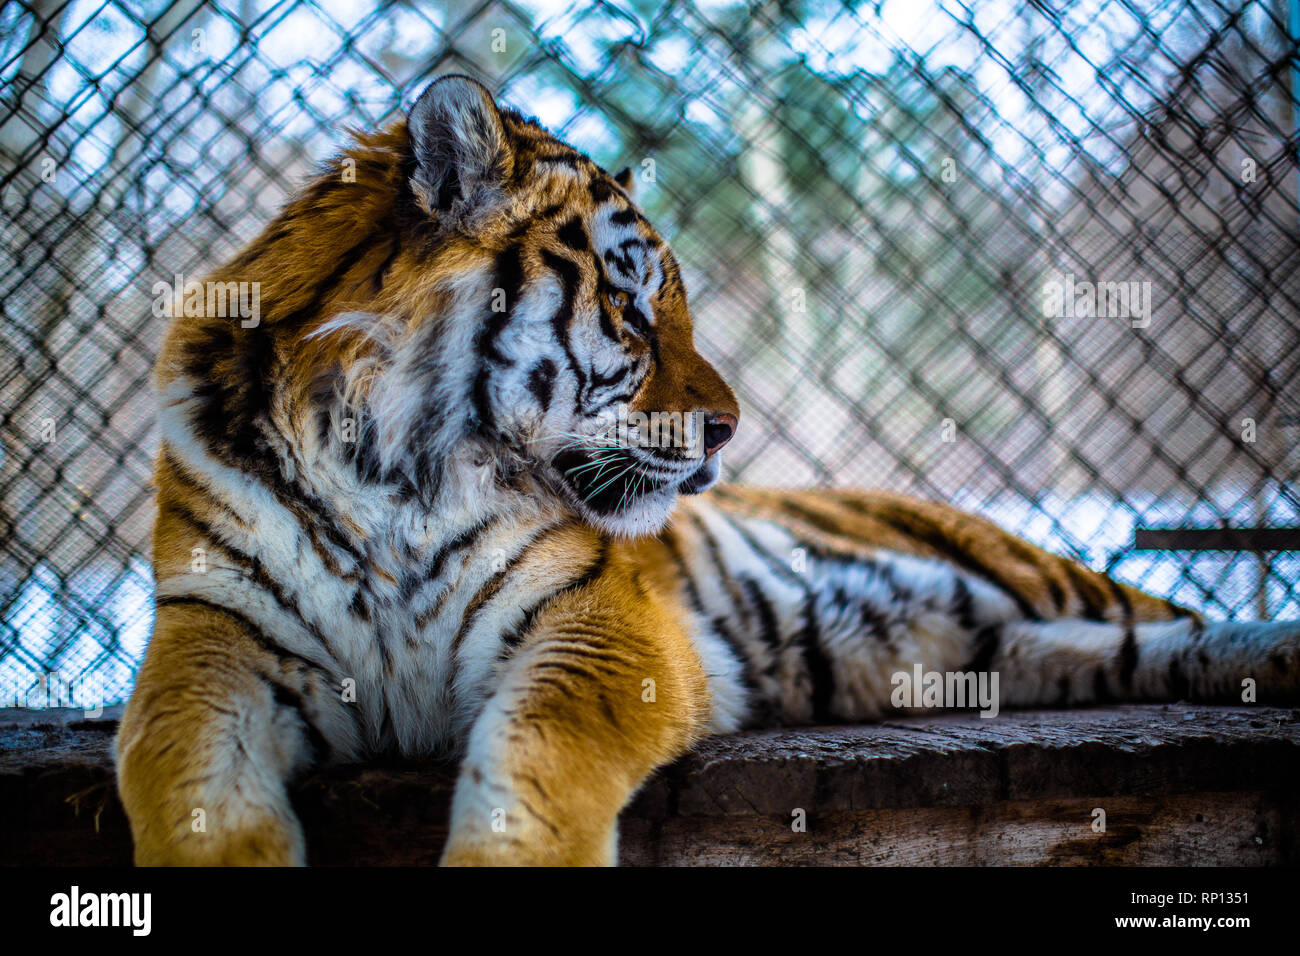 Ein sibirischer Tiger in Gefangenschaft sitzt friedlich in seinem Heiligtum. Russland Stockfoto